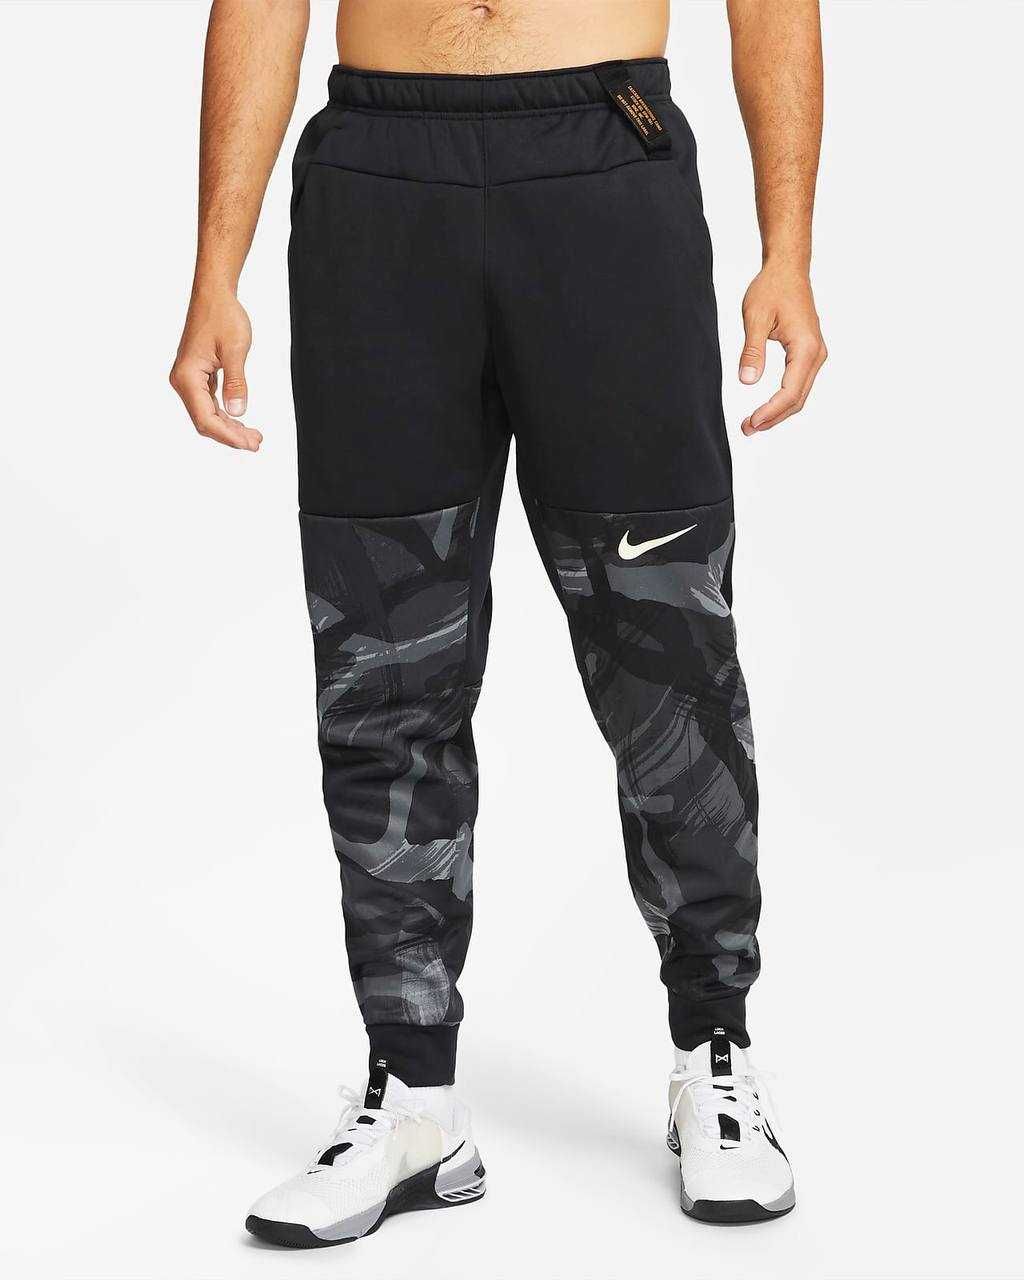 Nike спортивные штаны